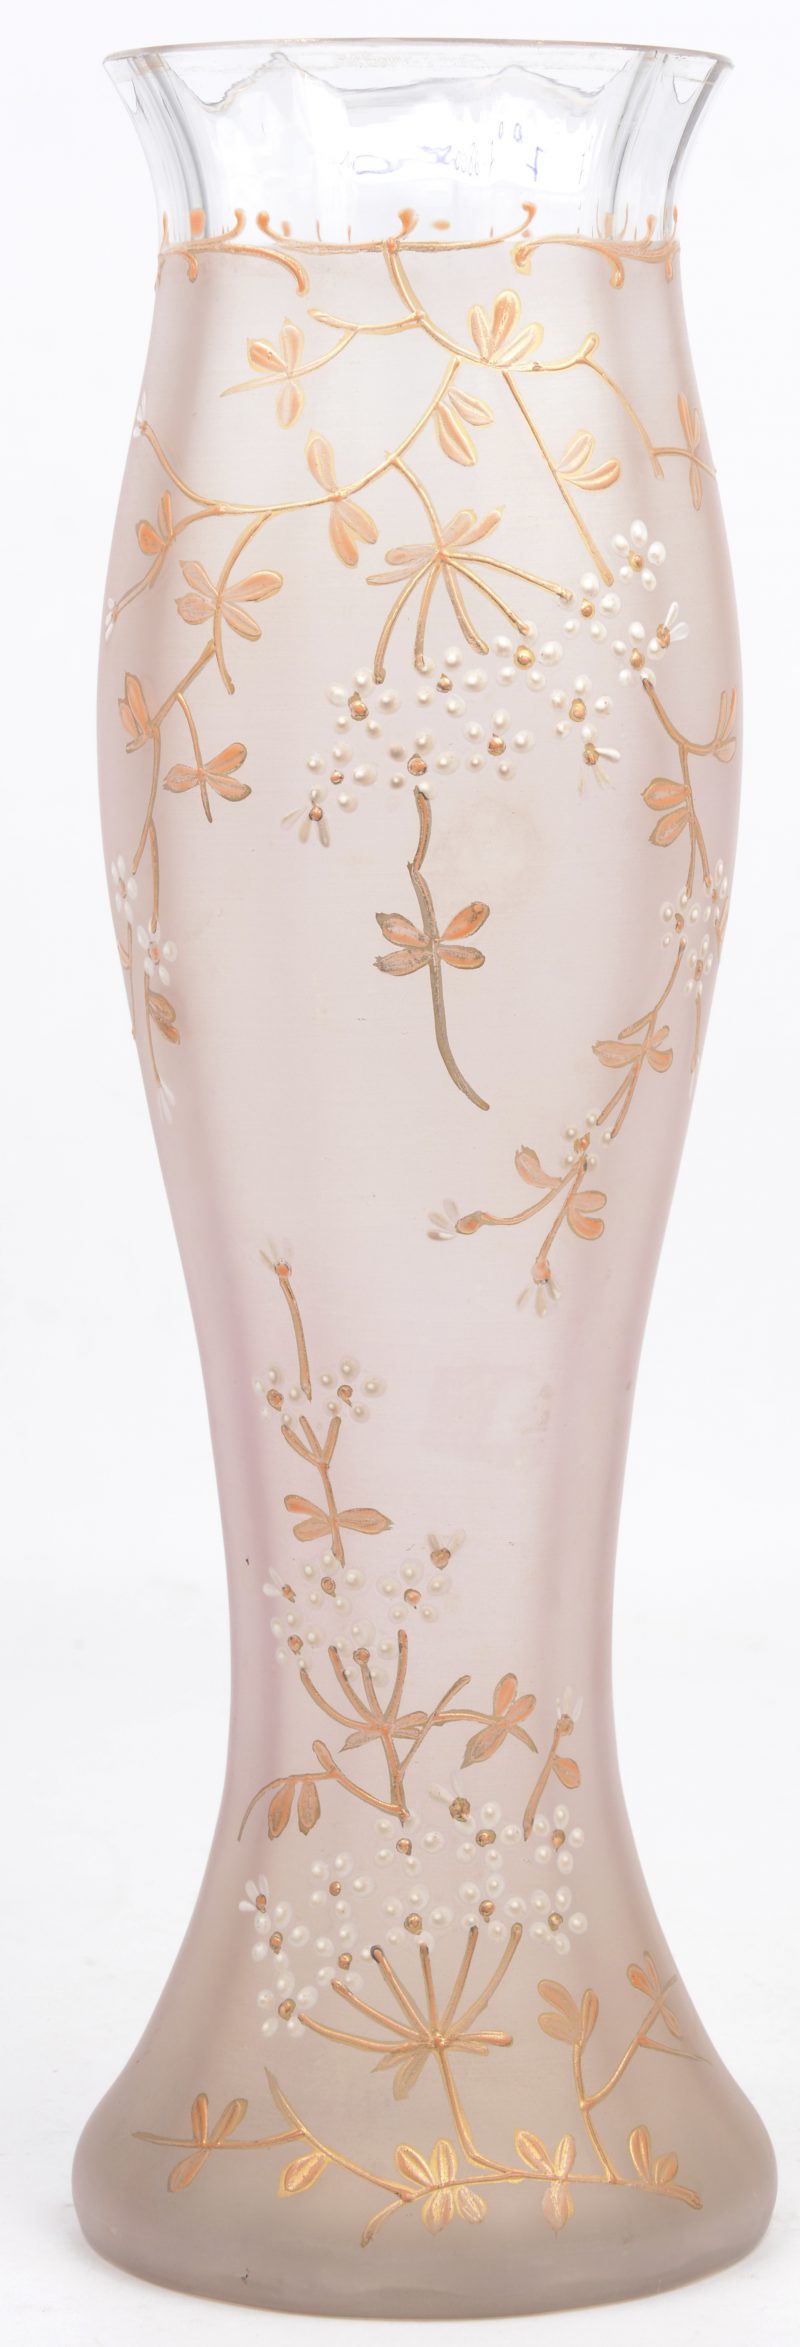 Een antieke vaas van gesatineerd roze glas, versierd met een handgeschilderd bloemendecor.